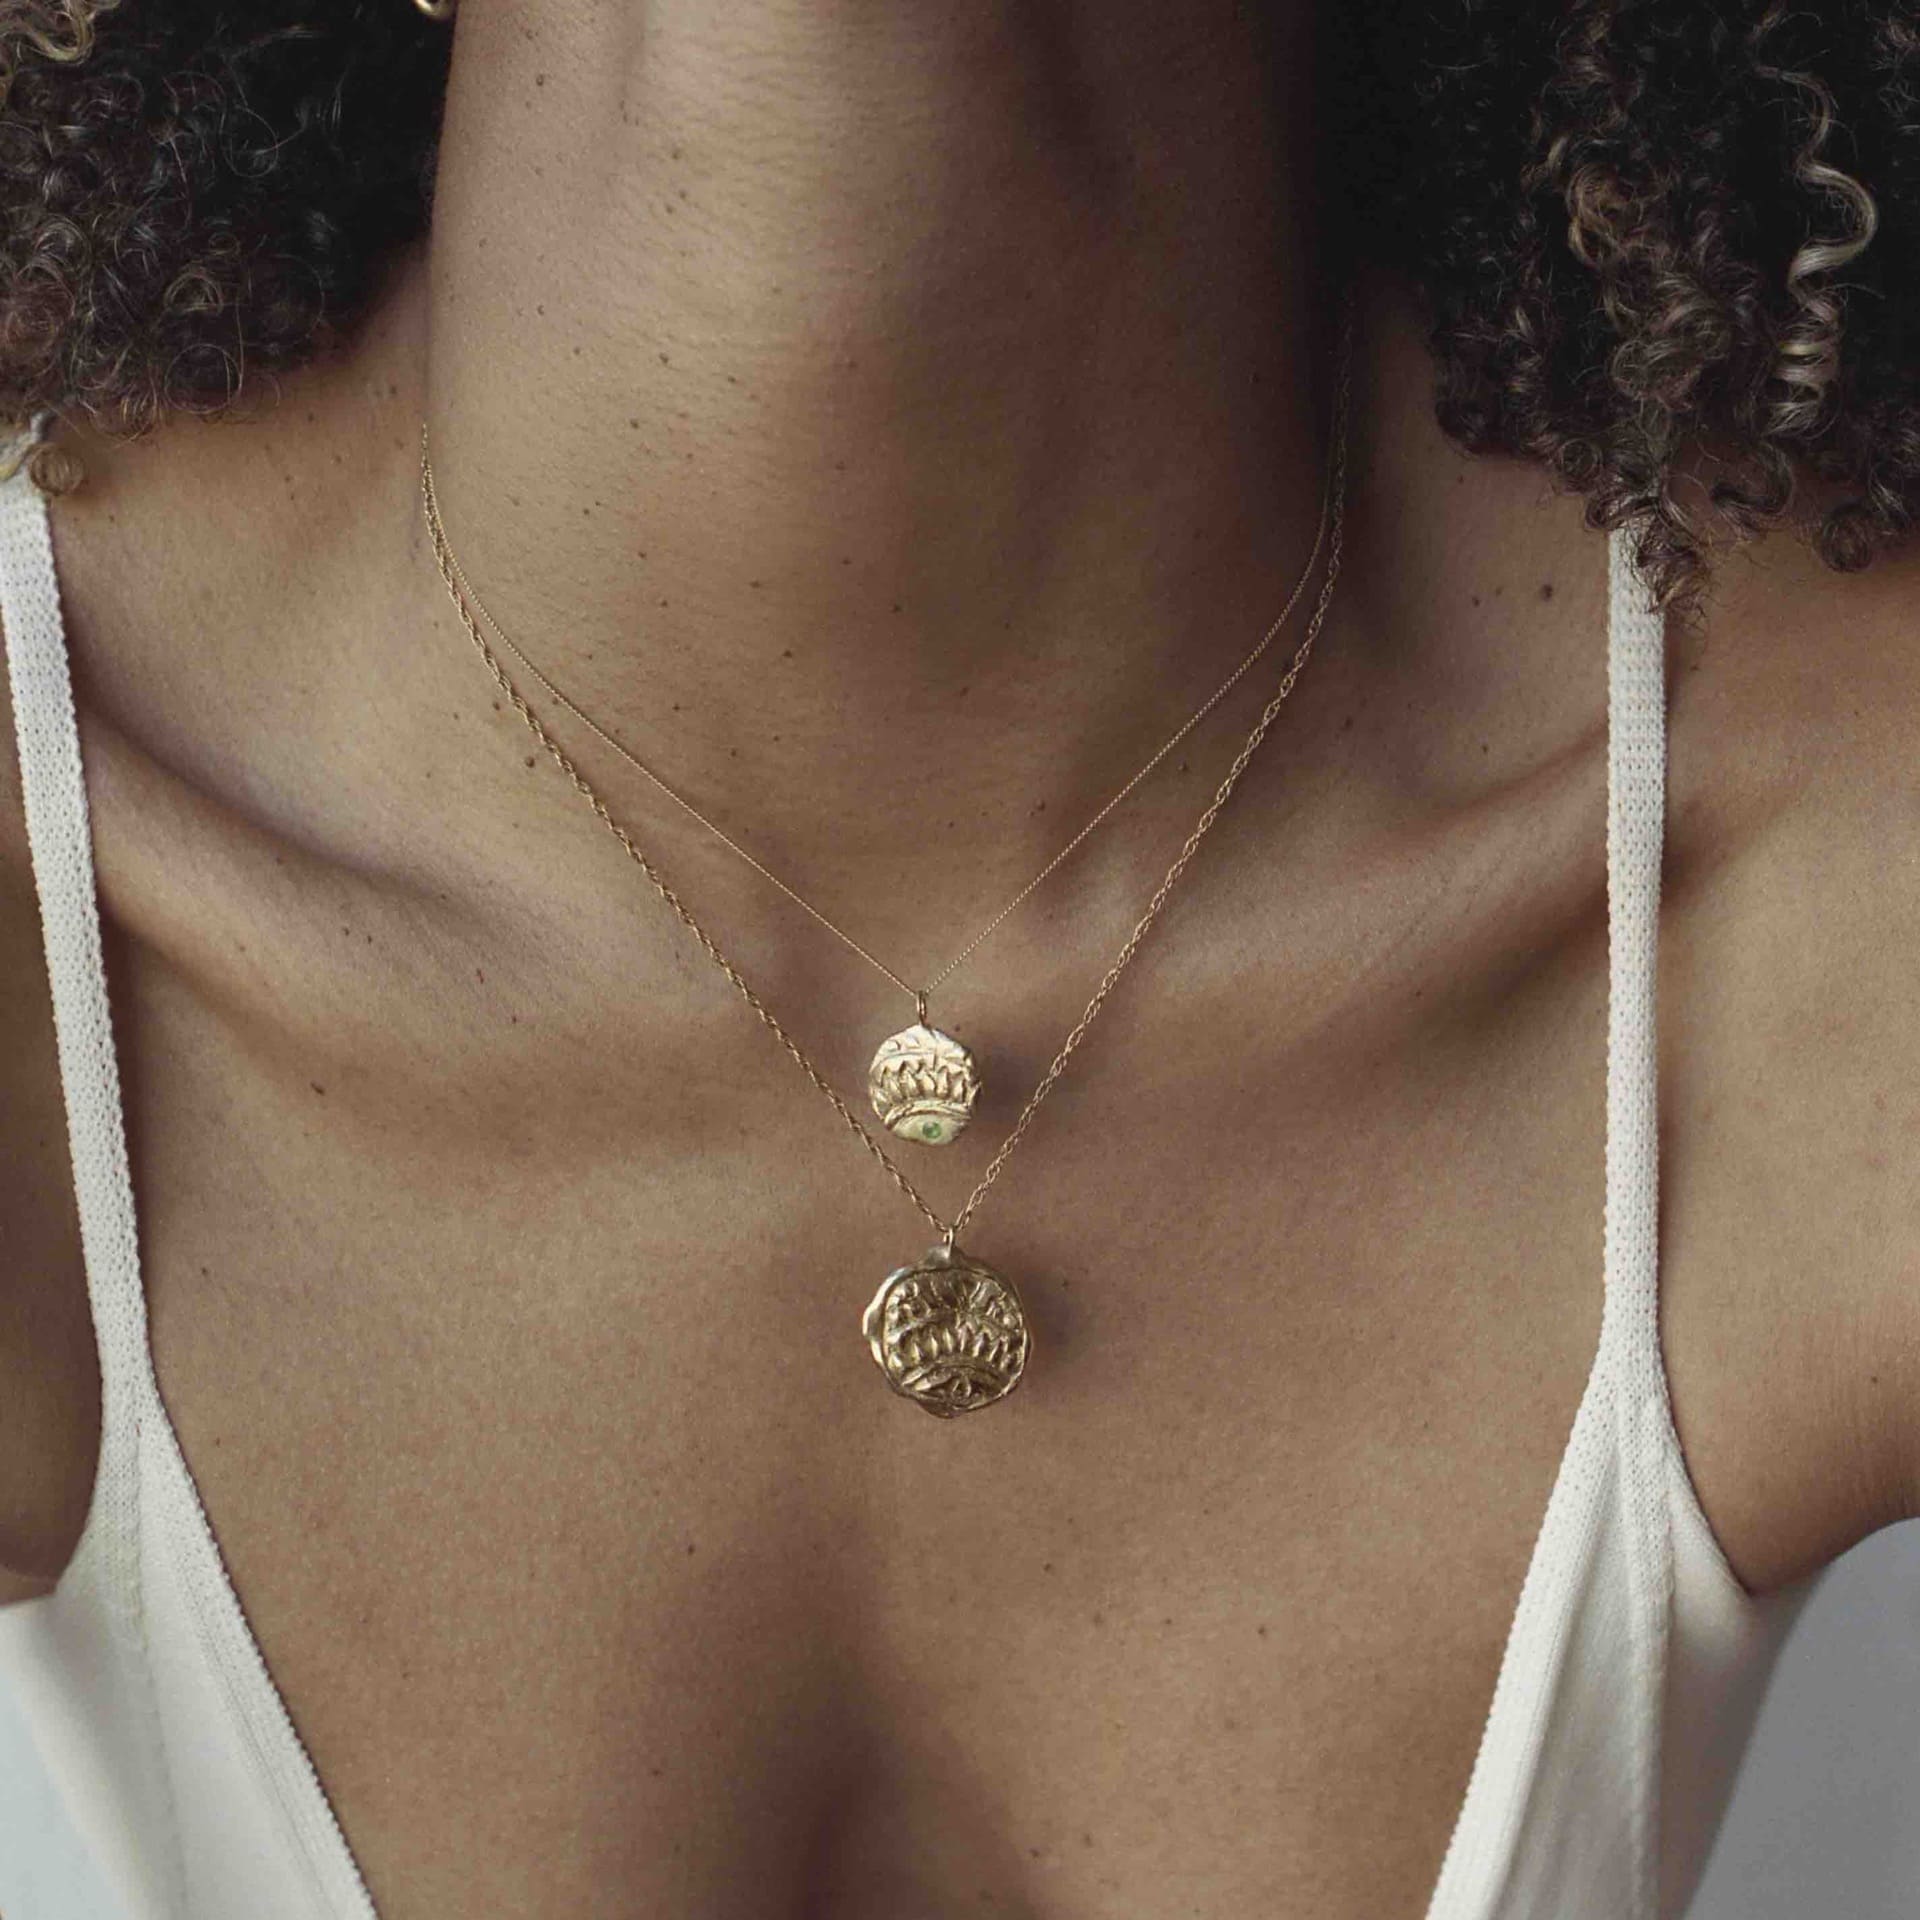 The Empreinte pendant by Claire Hibon